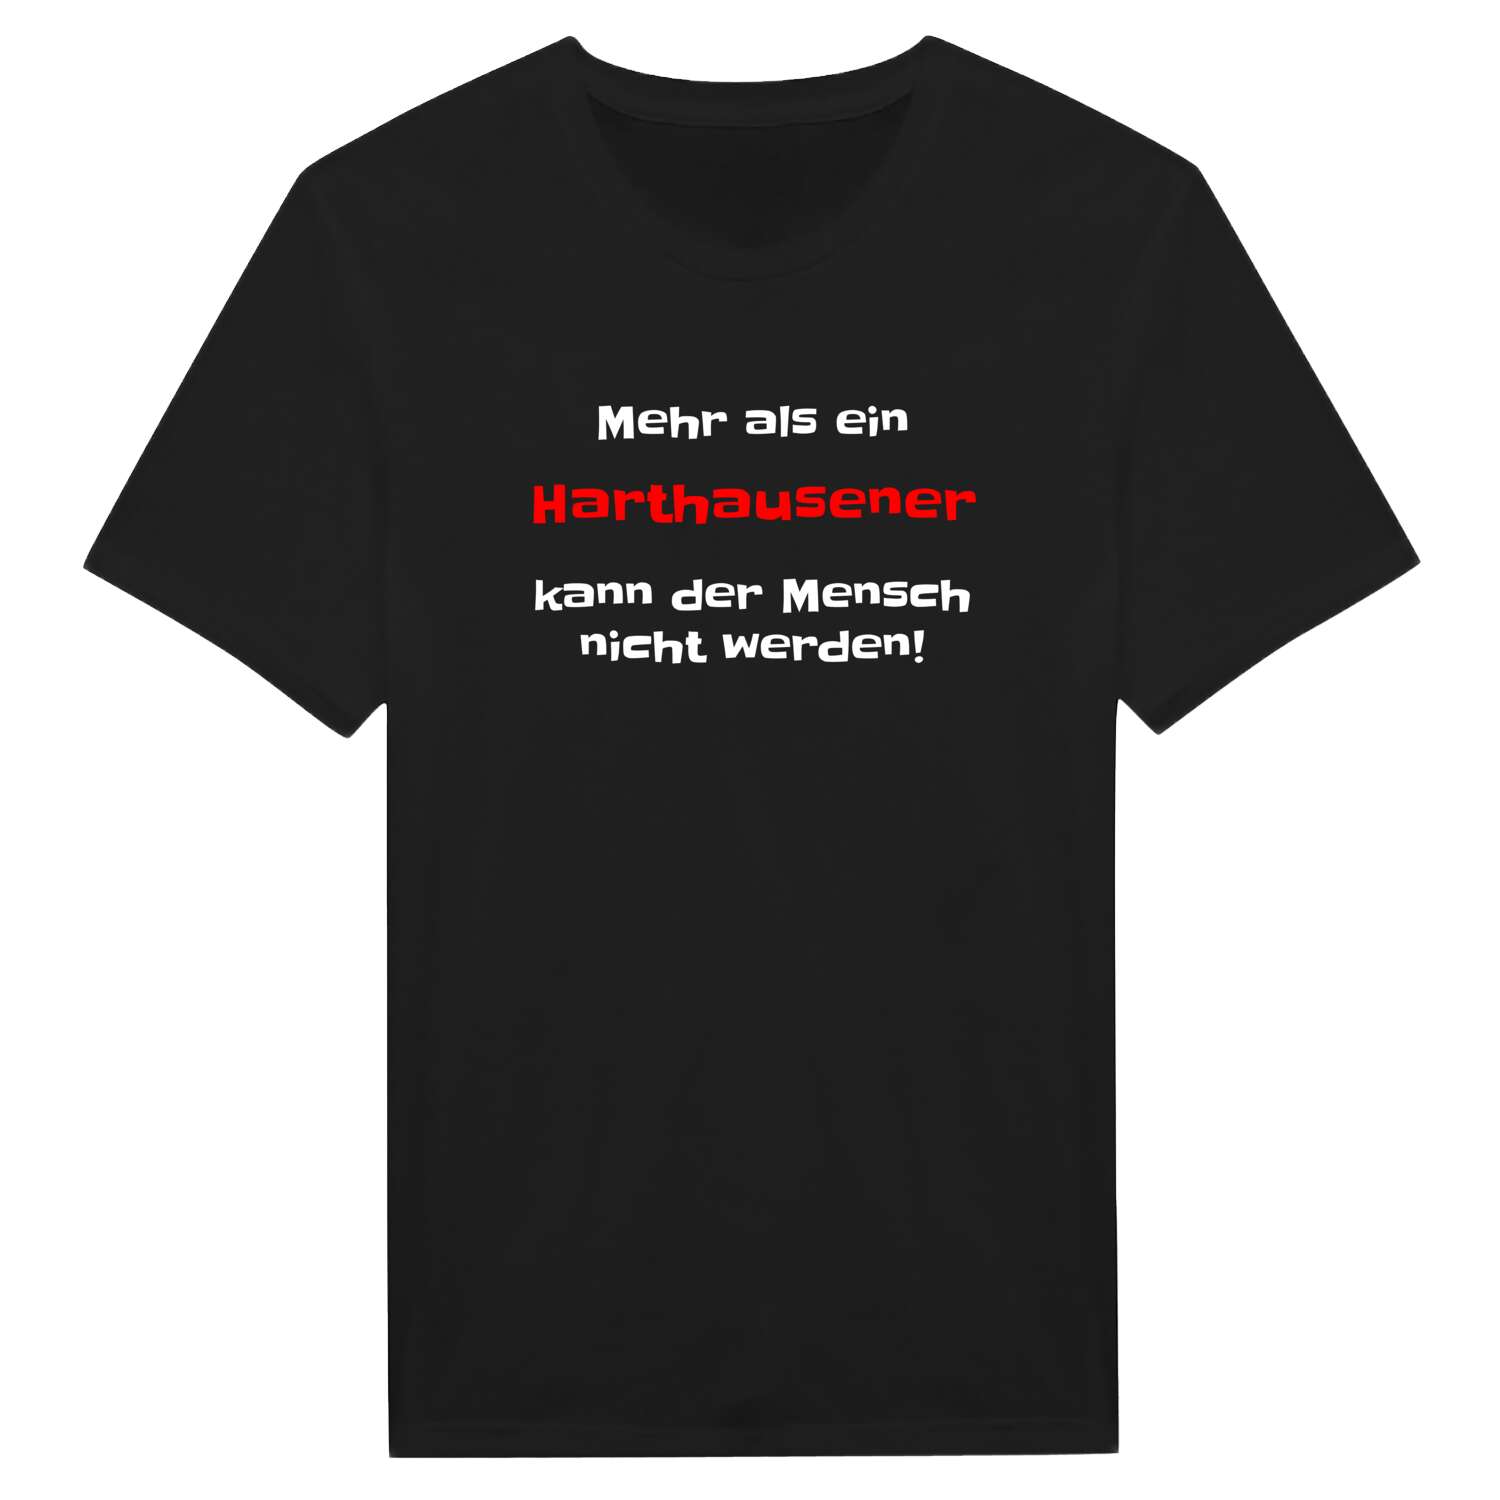 Harthausen T-Shirt »Mehr als ein«